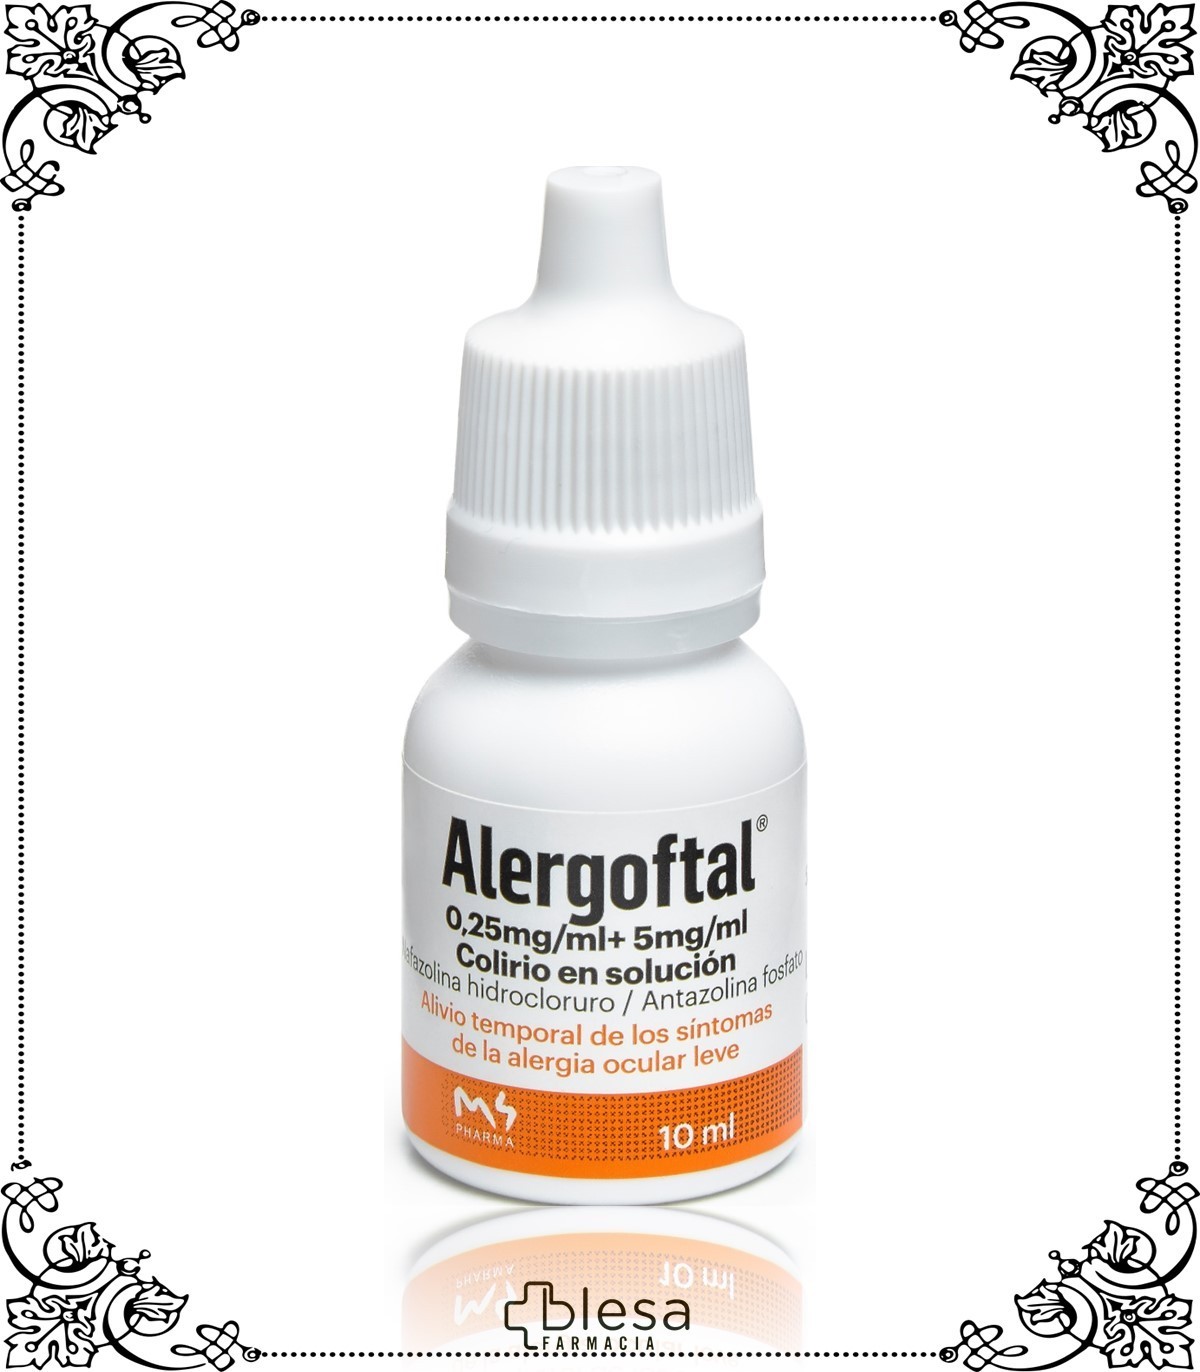 Reva alergoftal 0,25 mg/ml colirio en solución 10 ml - Blesa Farmacia